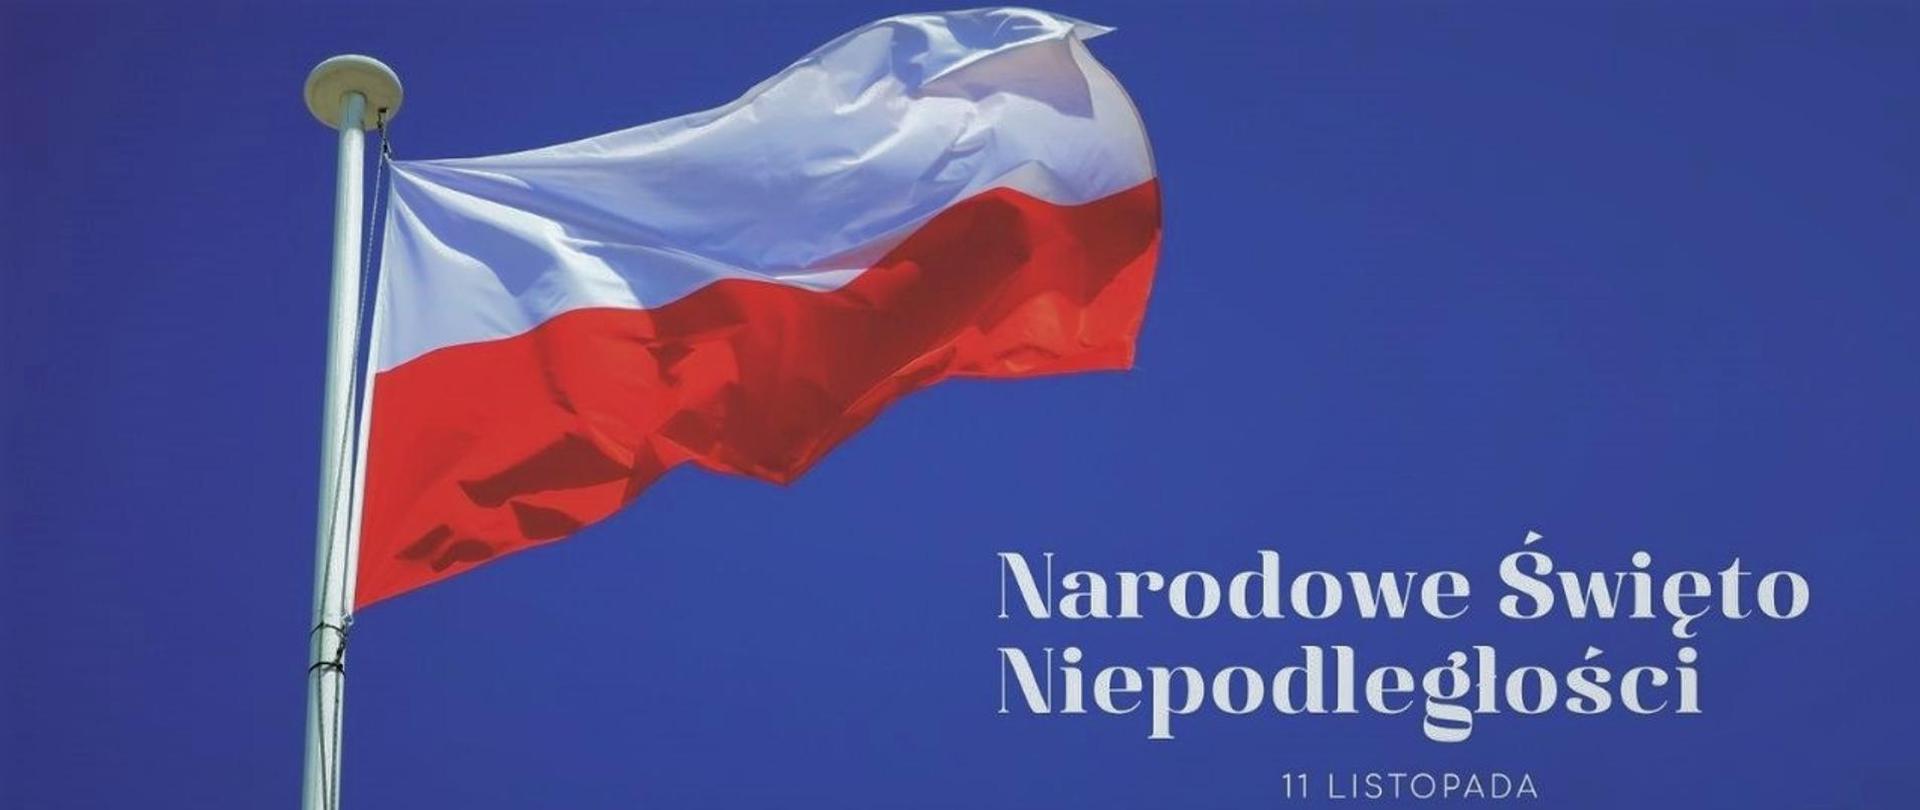 Fotografia przedstawiająca flagę narodową Polski